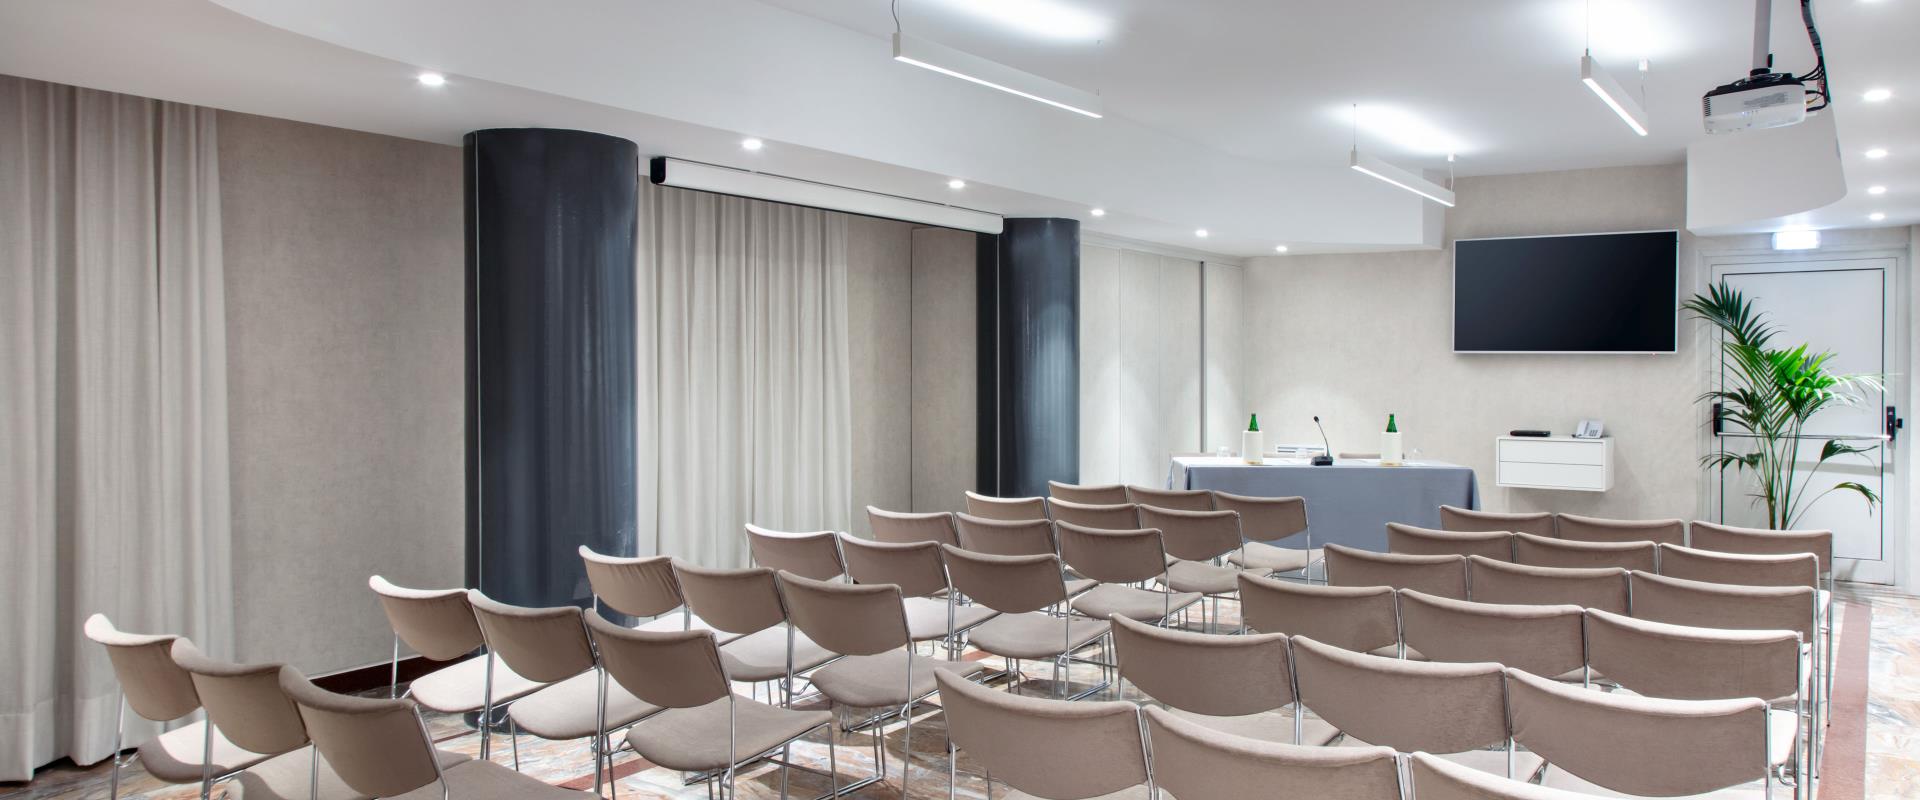 Der Ischia Meeting Room des Hotels Paradiso in Neapel bietet Platz für bis zu 42 Personen